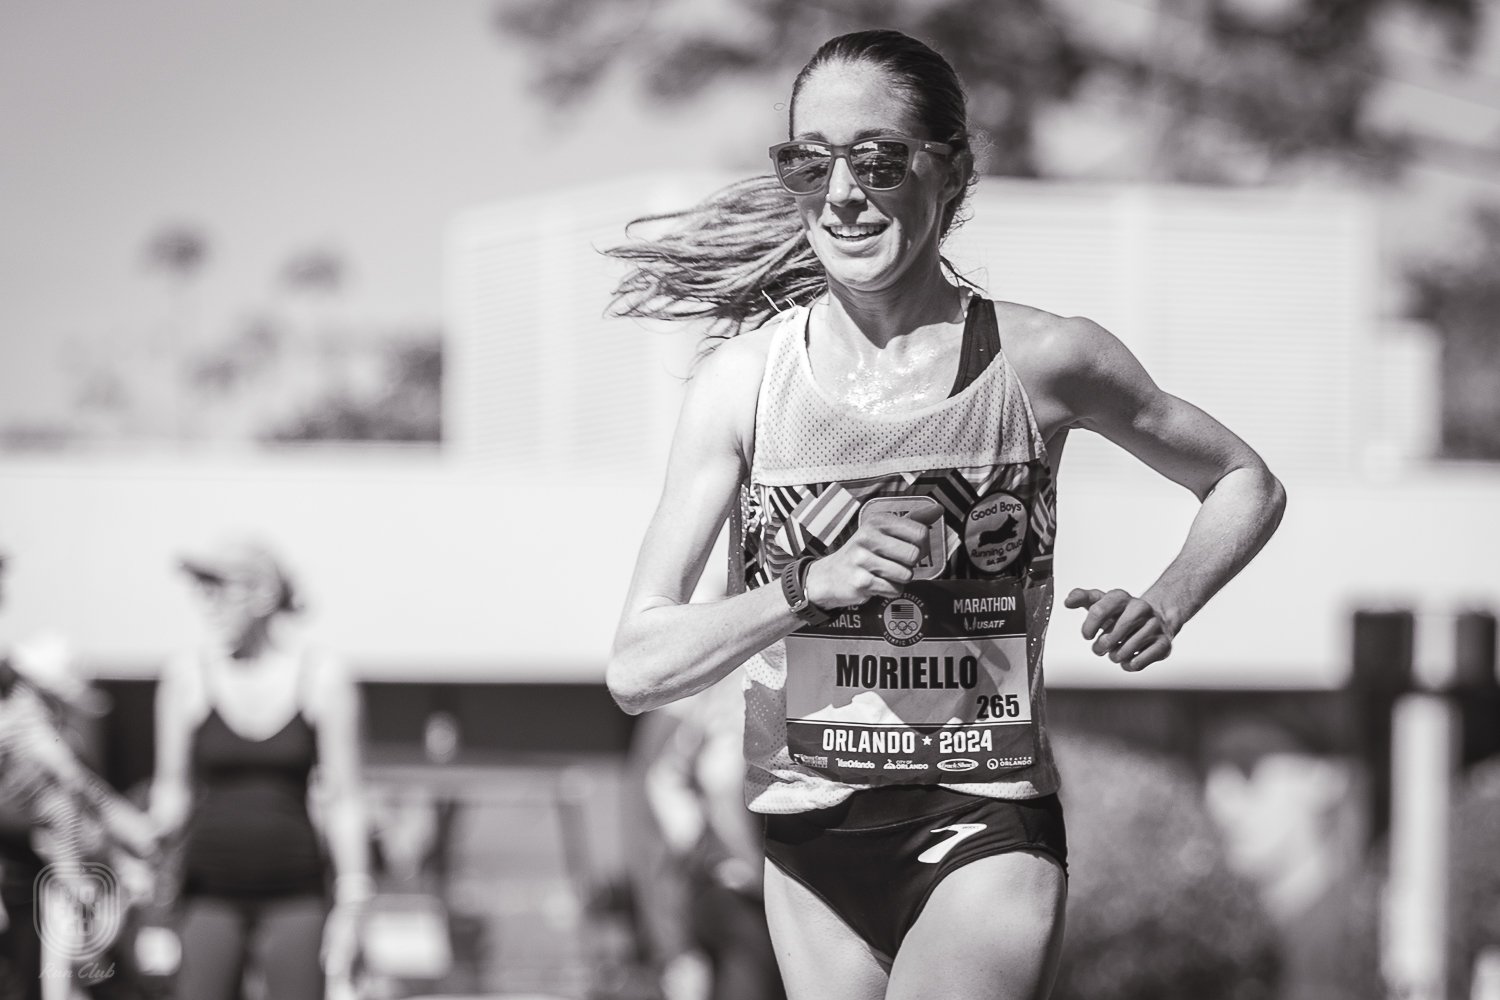  28. Rosa Moriello (02:40:45), en su primera clasificatoria para maratón olímpico. 